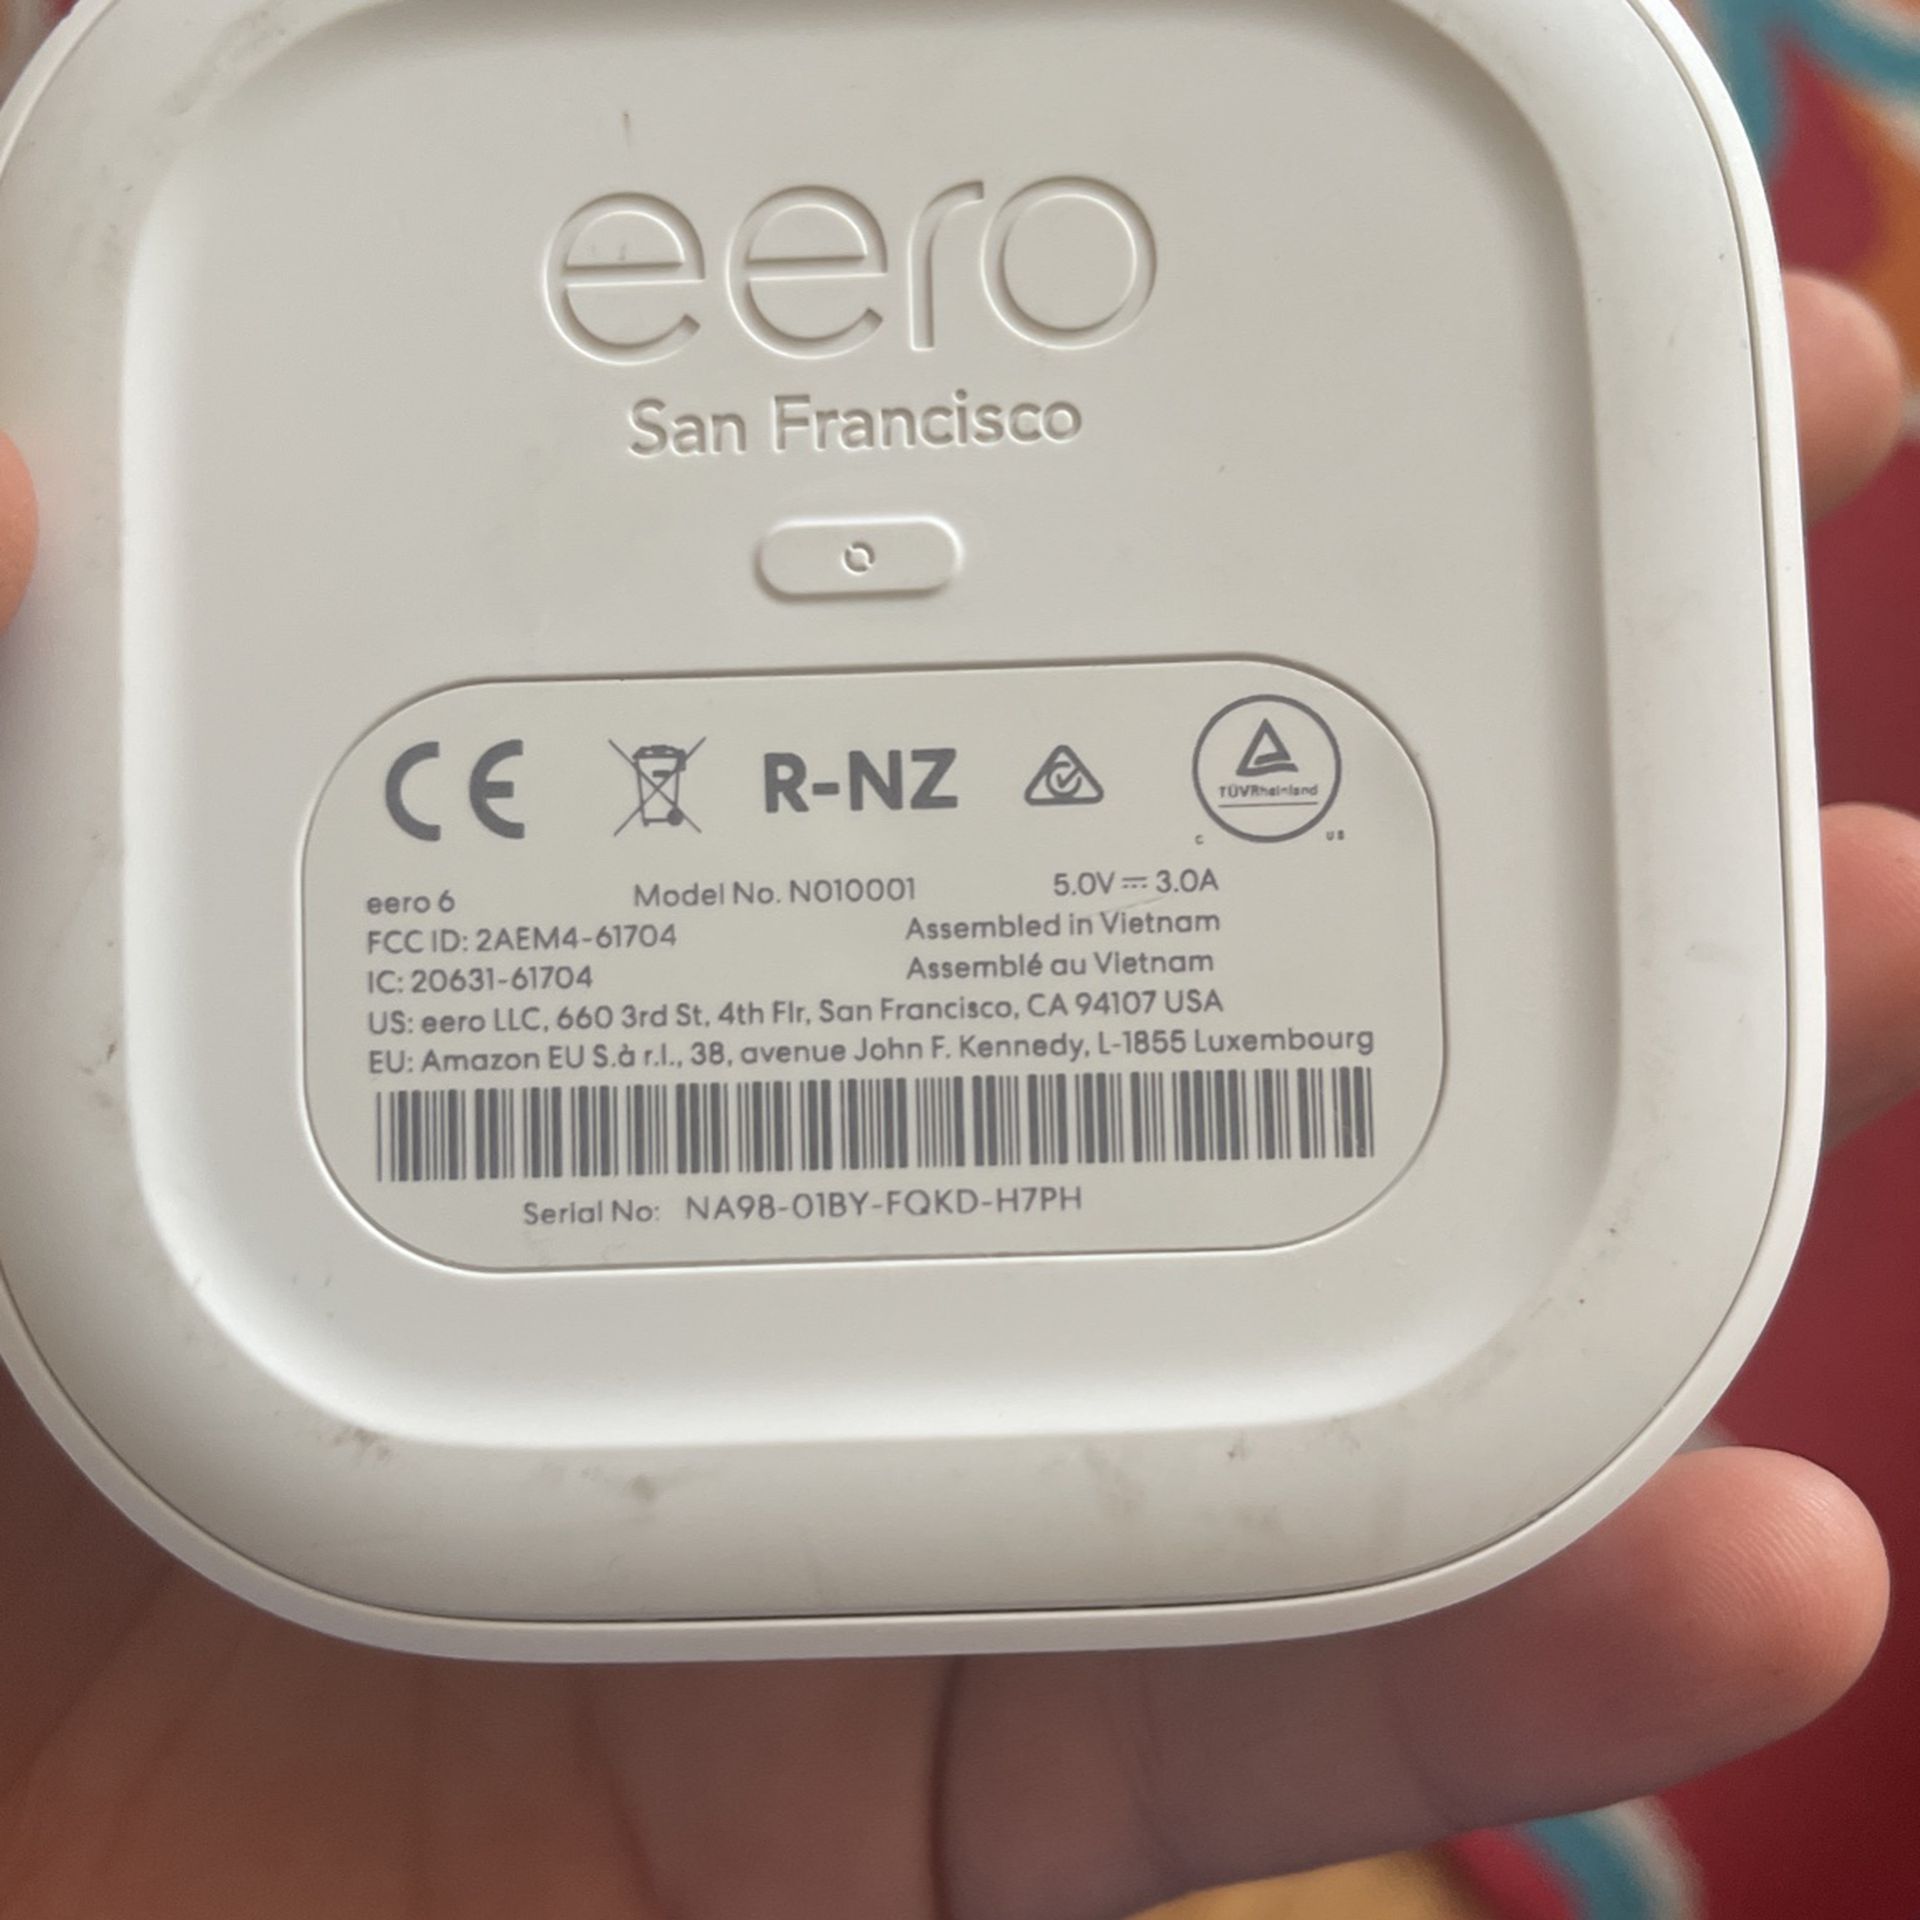 Eero 6 Mesh Wifi Router (3-pack) - Model N010001 With 2 Extenders